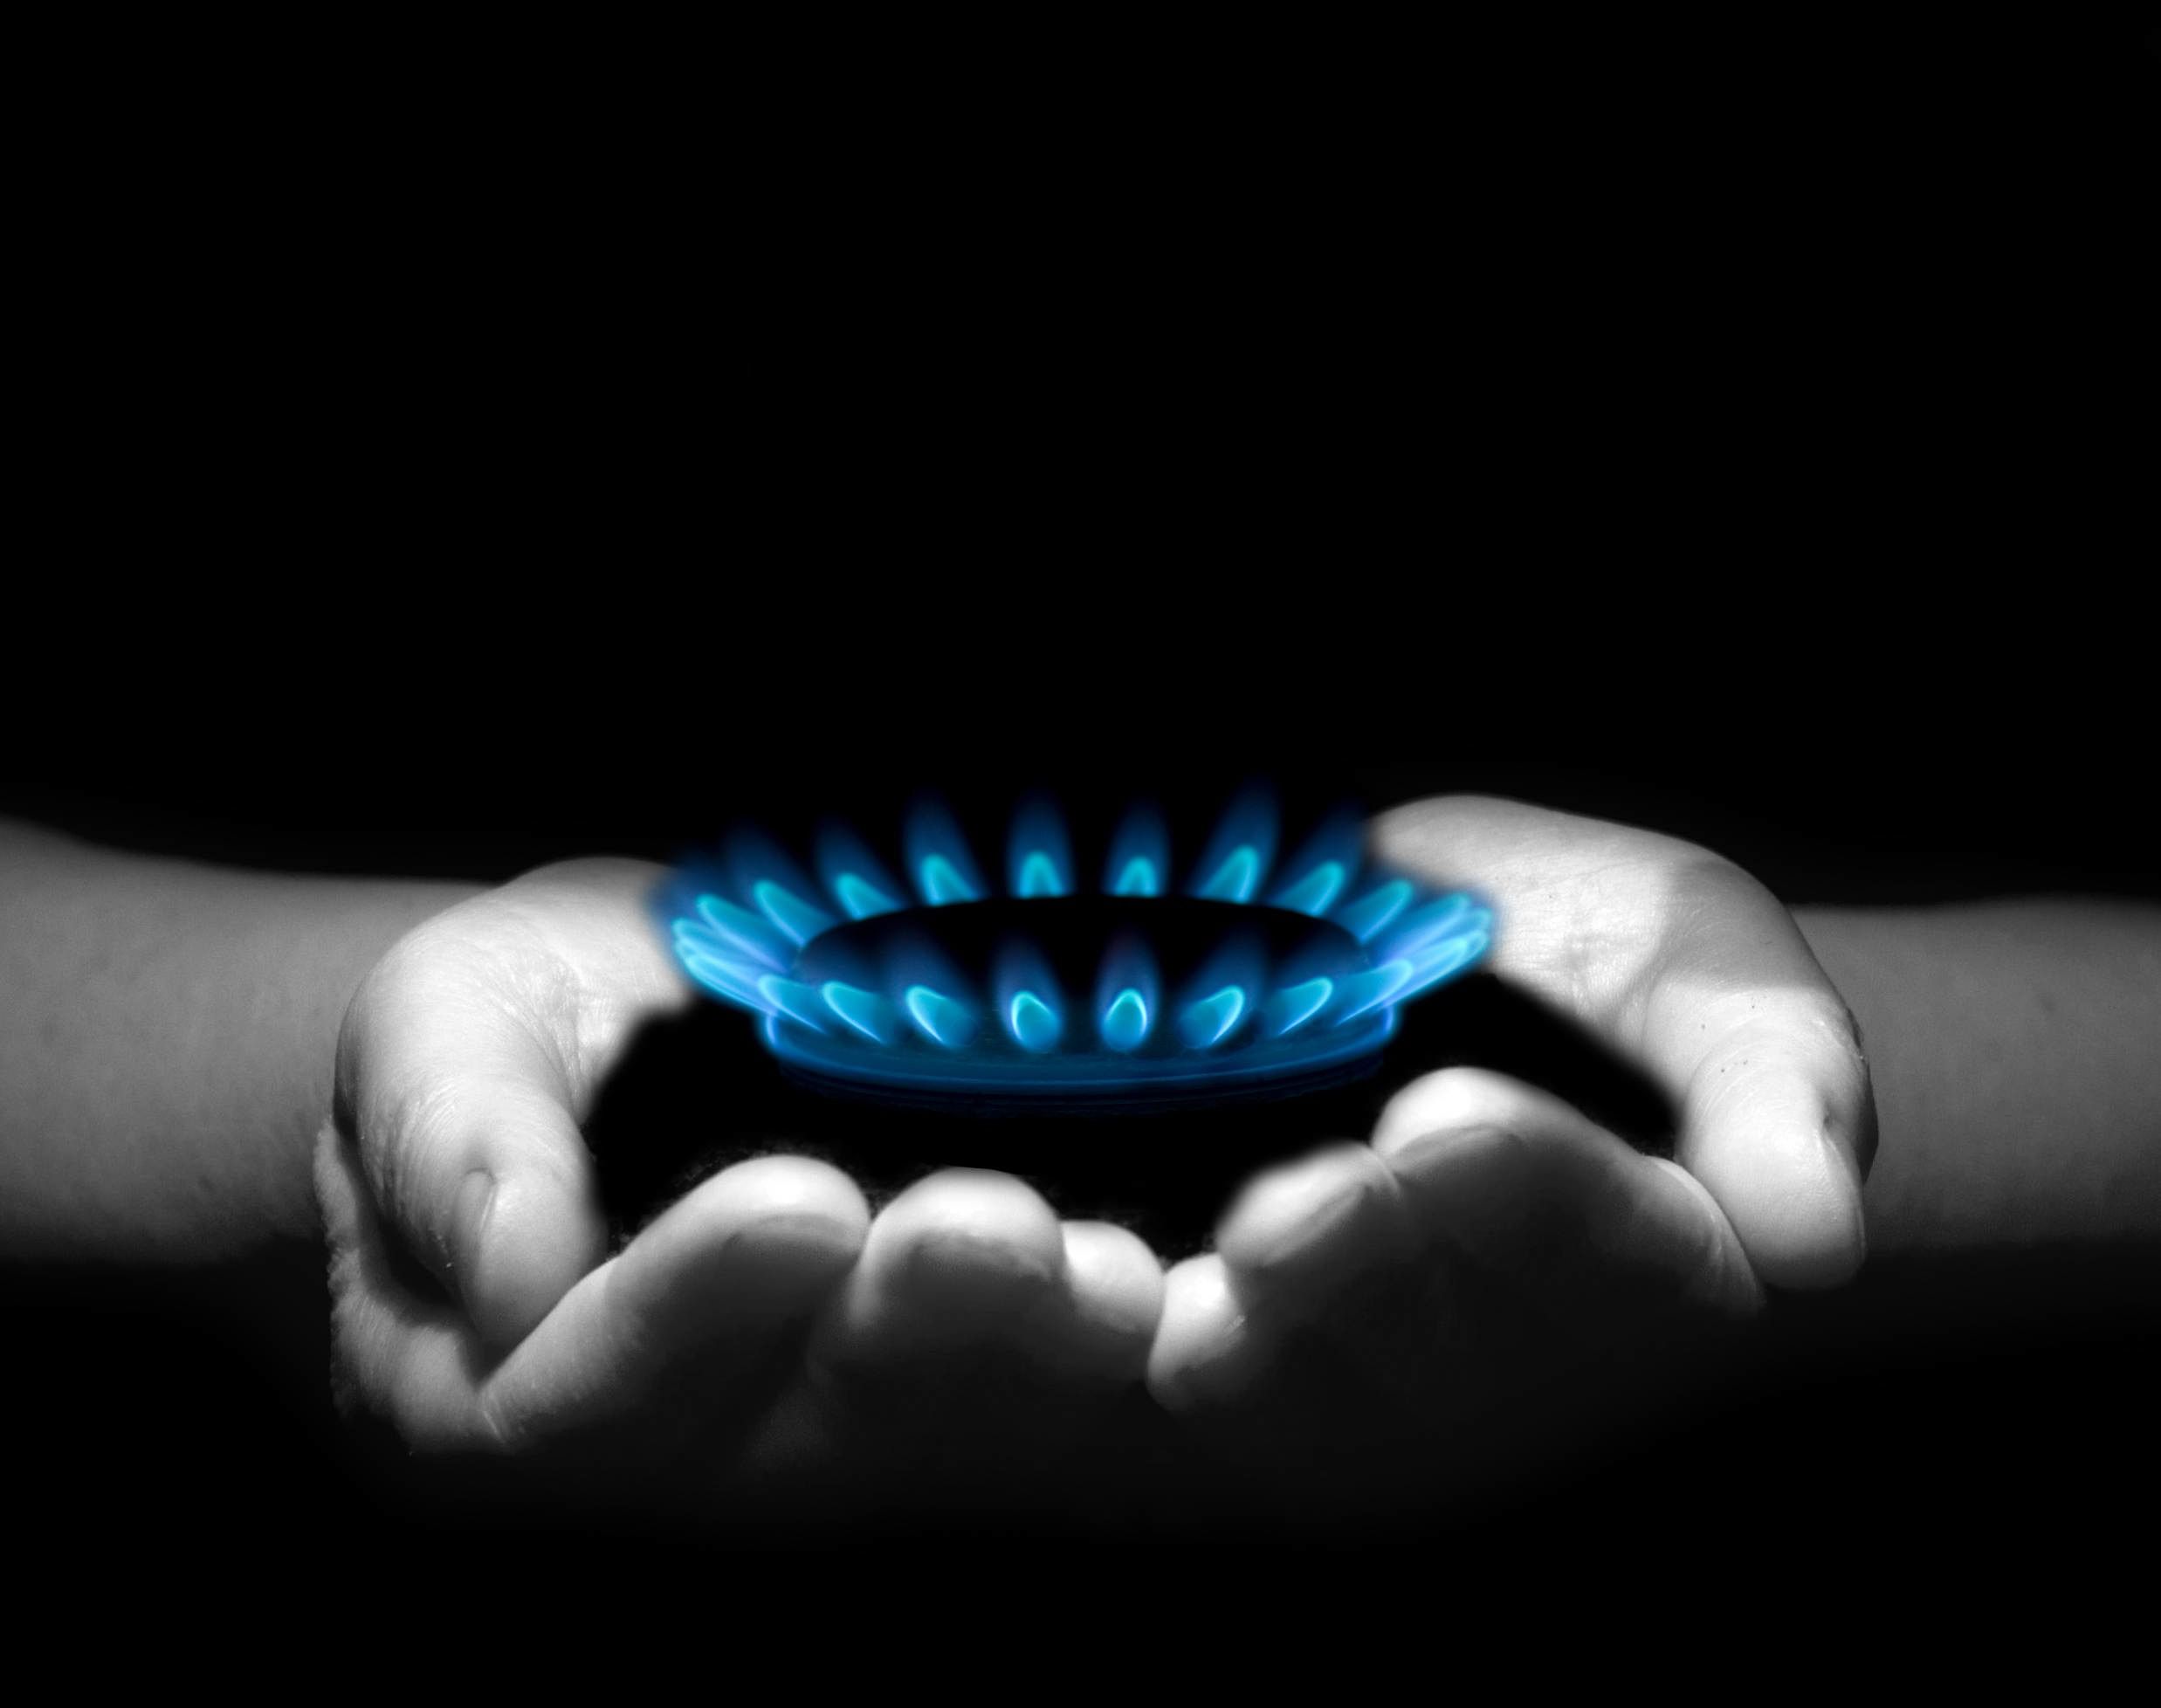 НКРЕКП застерігає облгази від виставляння населенню додаткових рахунків за спожитий газ. Національна комісія, що здійснює регулювання у сфері енергетики та комунальних послуг (НКРЕКП) попереджає облгази, що донарахування плати за спожитий раніше за нормами газ є незаконним.